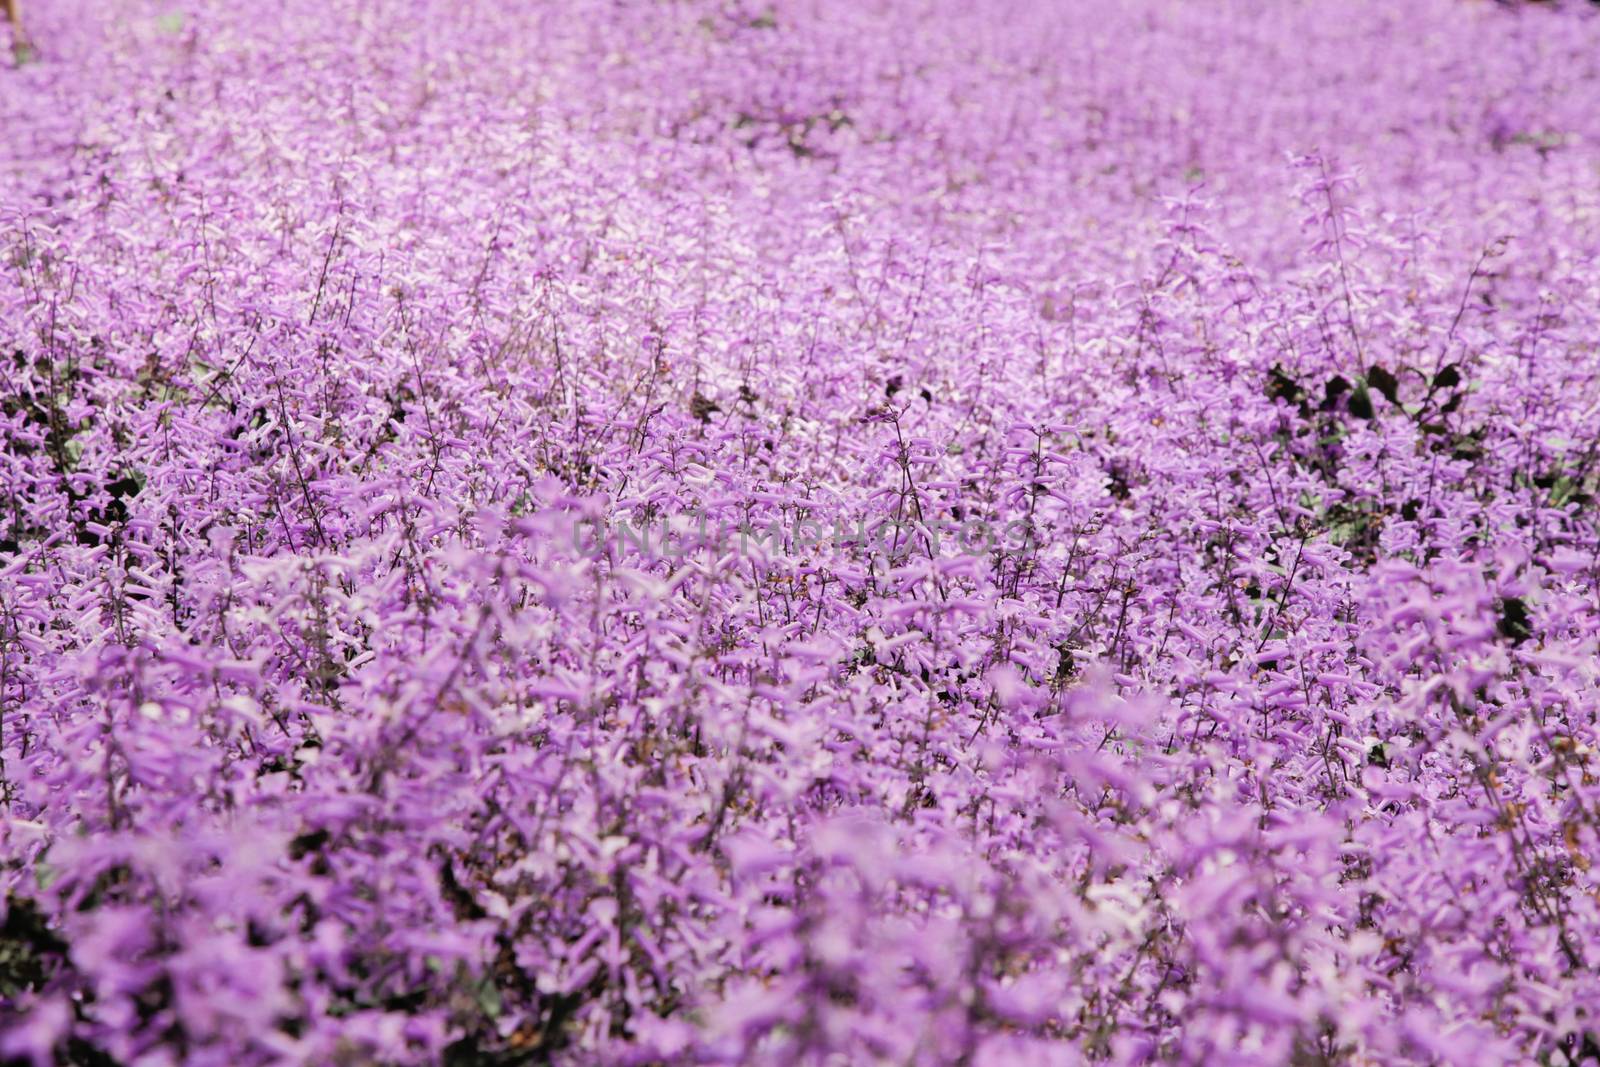 Lavender garden field closeup on one flower by haiderazim